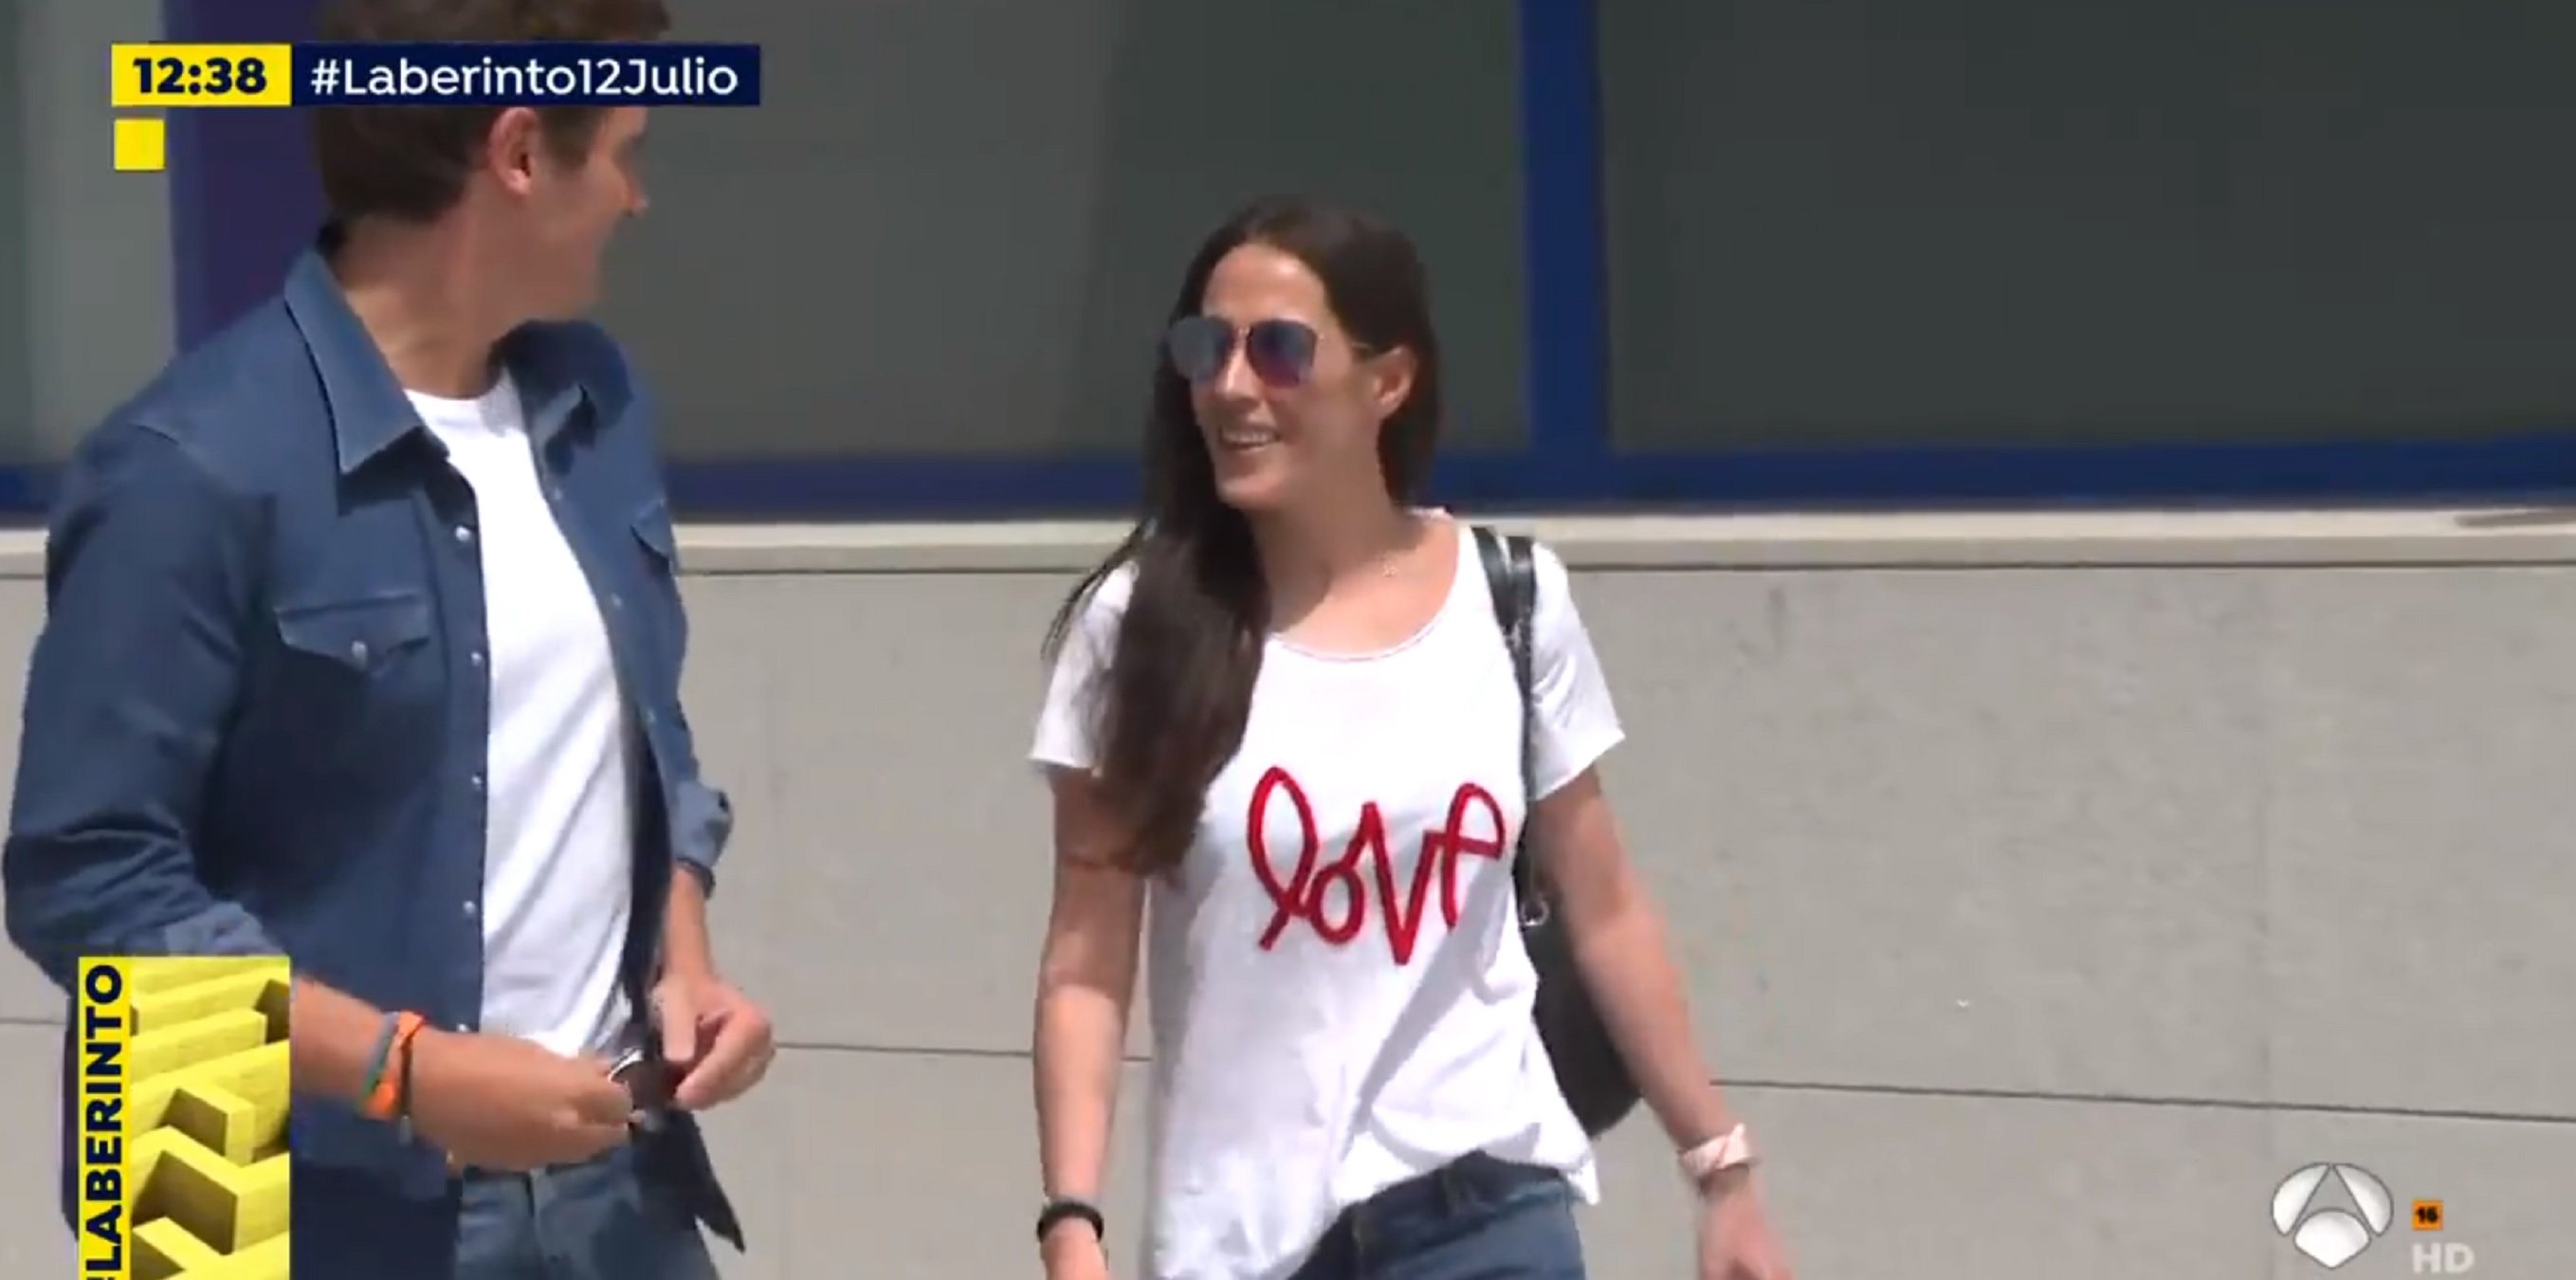 Rivera surt molt més prim de l'hospital amb Malú i una samarreta de 'Love'